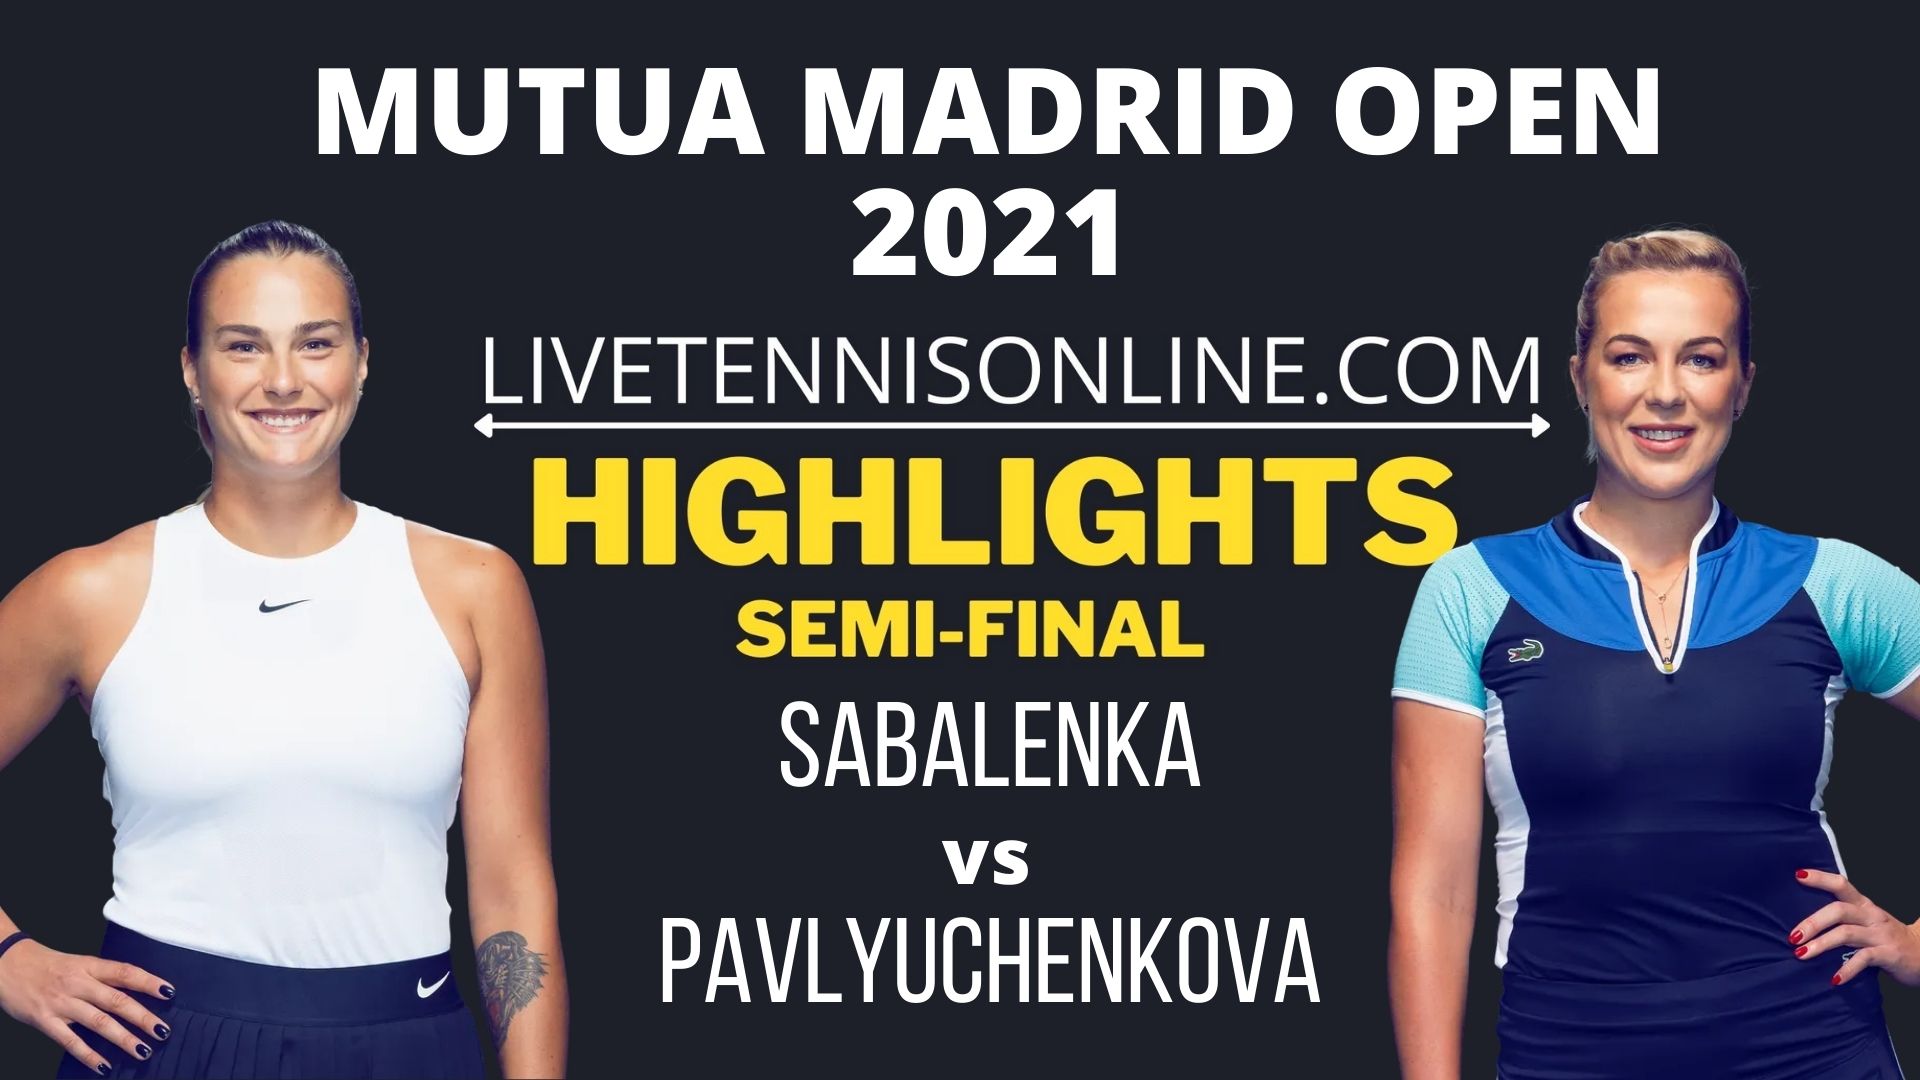 Sabalenka Vs Pavlyuchenkova Semi Final Highlights 2021 Madrid